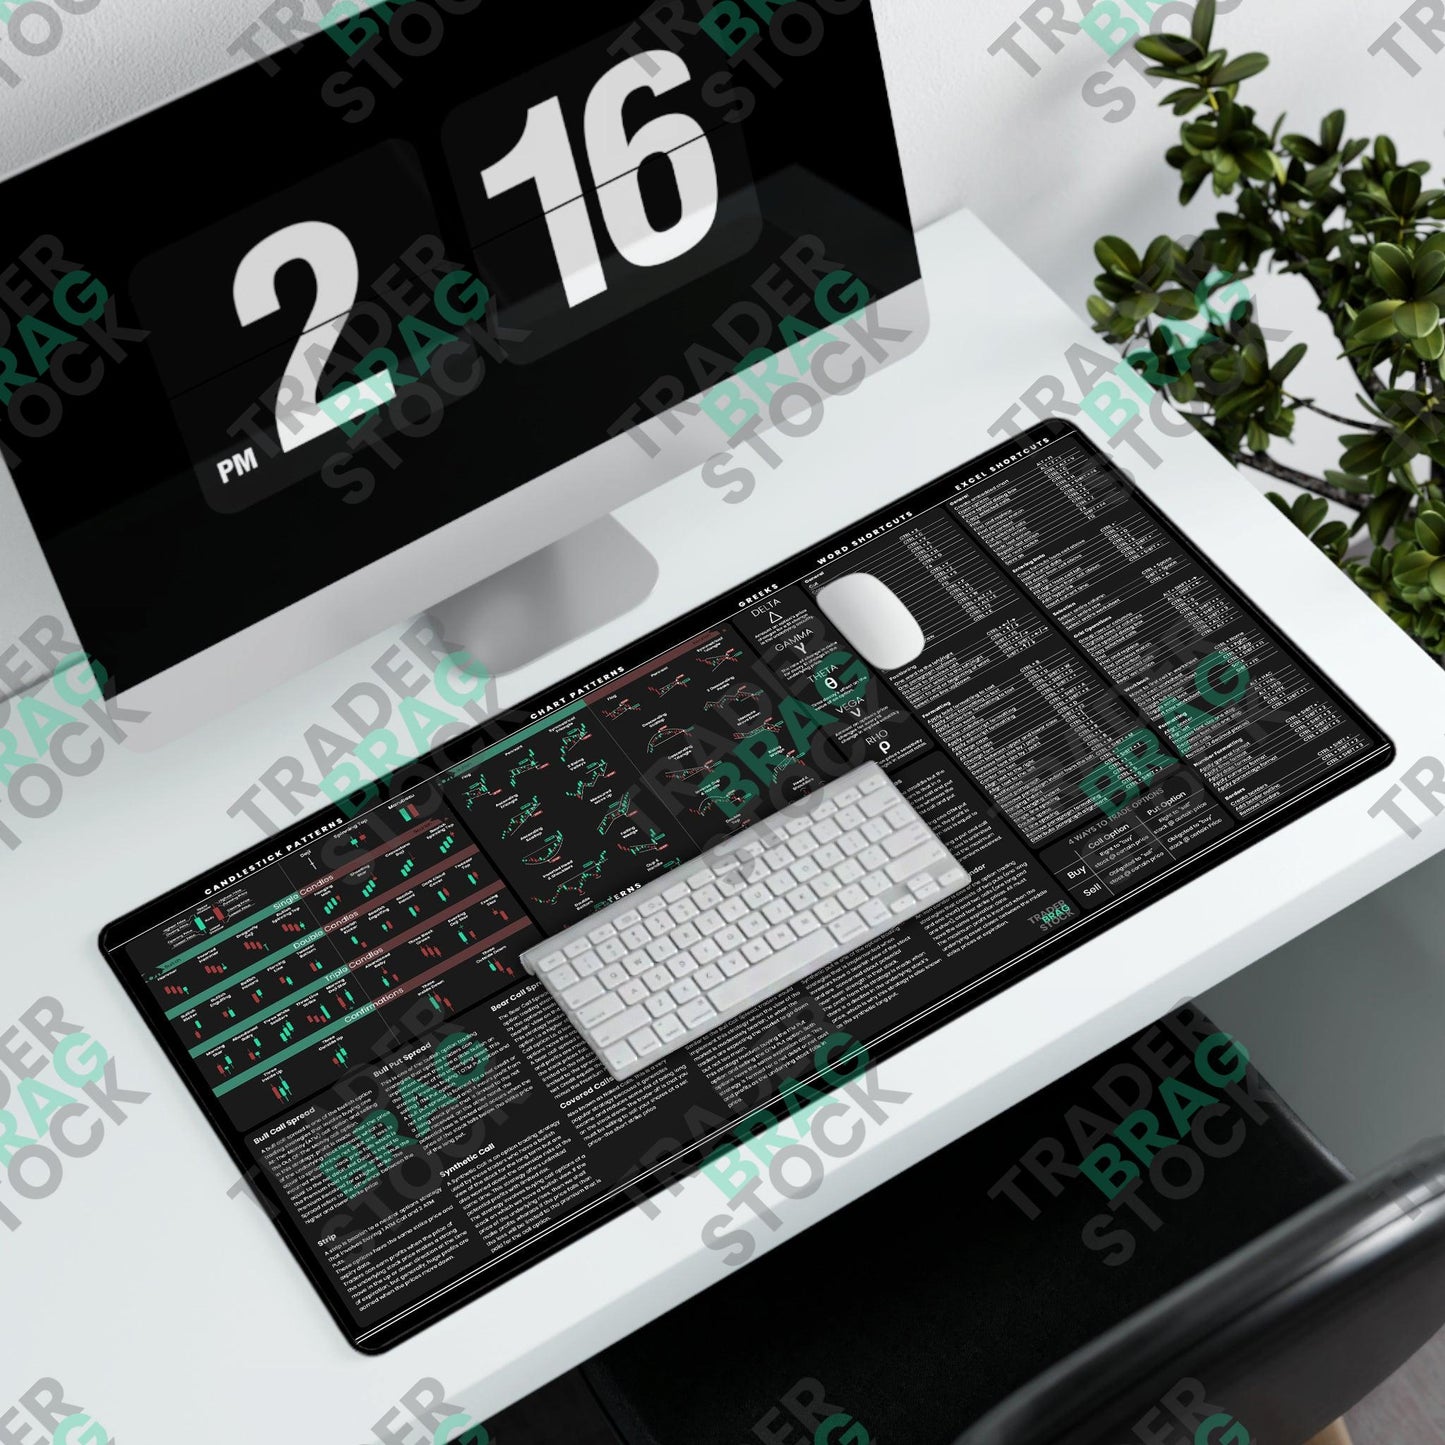 Trader's Premium Desk Mat + Desk Calendar + Modern Bull Figurine